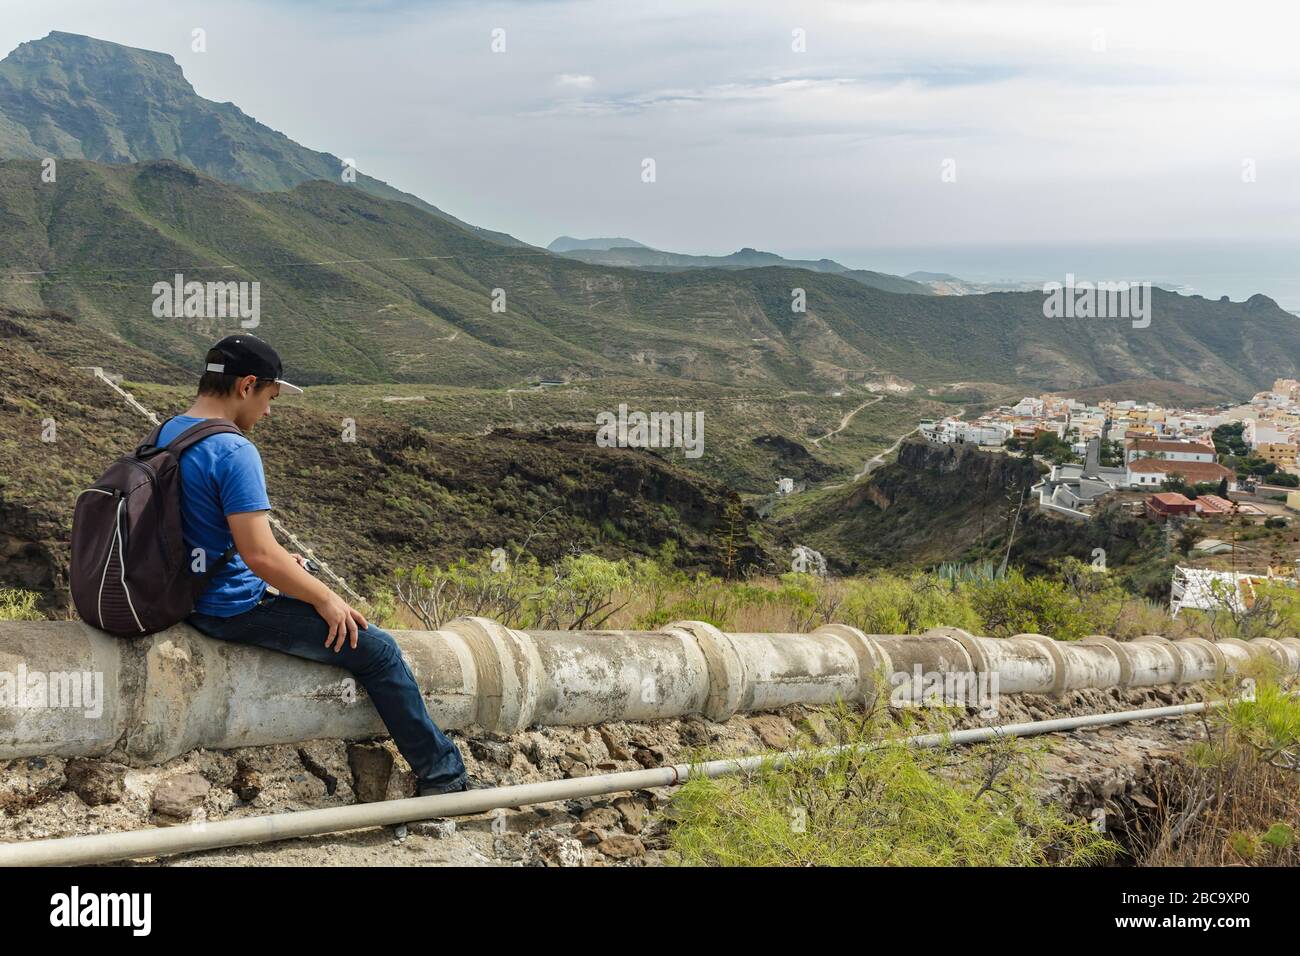 Un jeune homme avec un sac à dos sur l'aqueduc en béton dans le côté ouest de Tenerife près du village d'Adeje. Randonnée pédestre par le sentier de montagne Banque D'Images